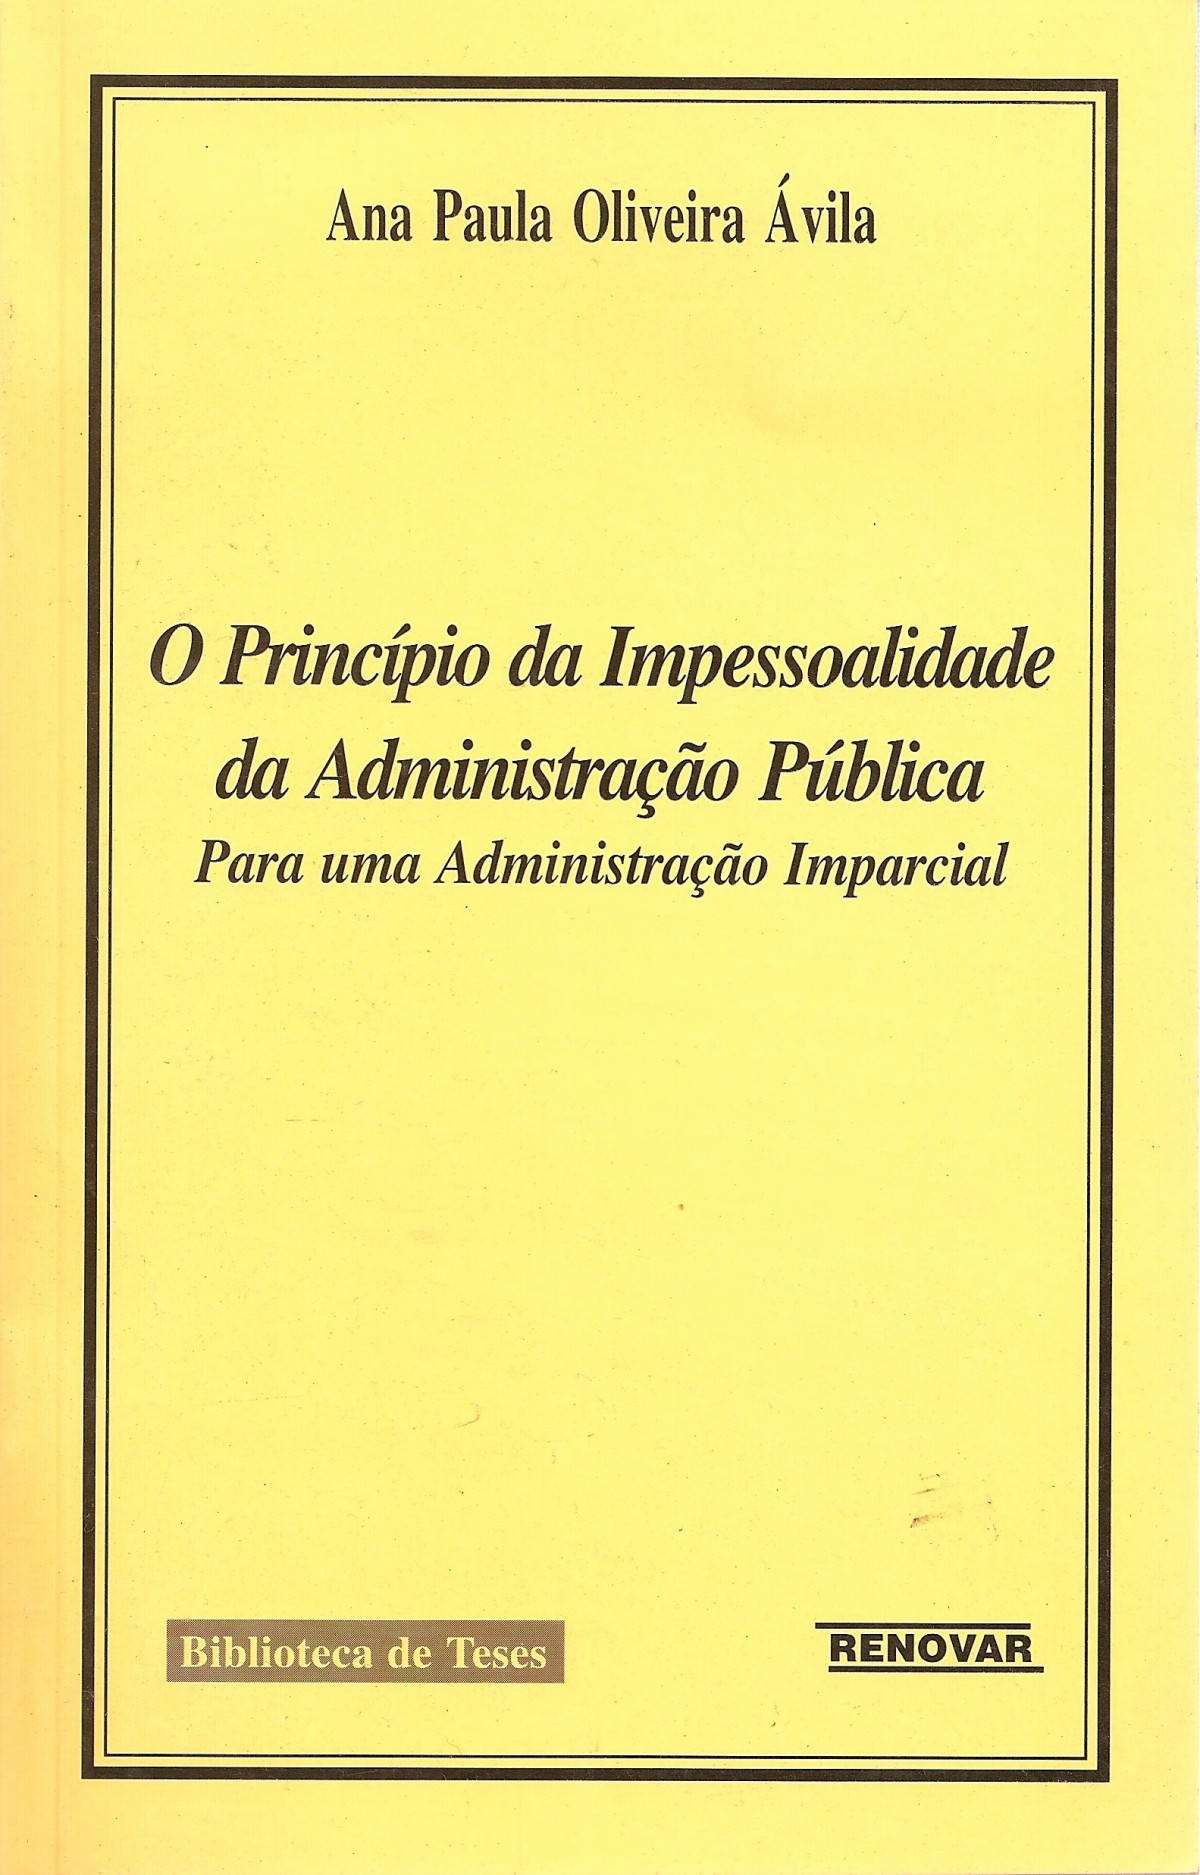 Foto 1 - O Princípio da Impessoalidade da Administração Pública - Para uma Administração Imparcial